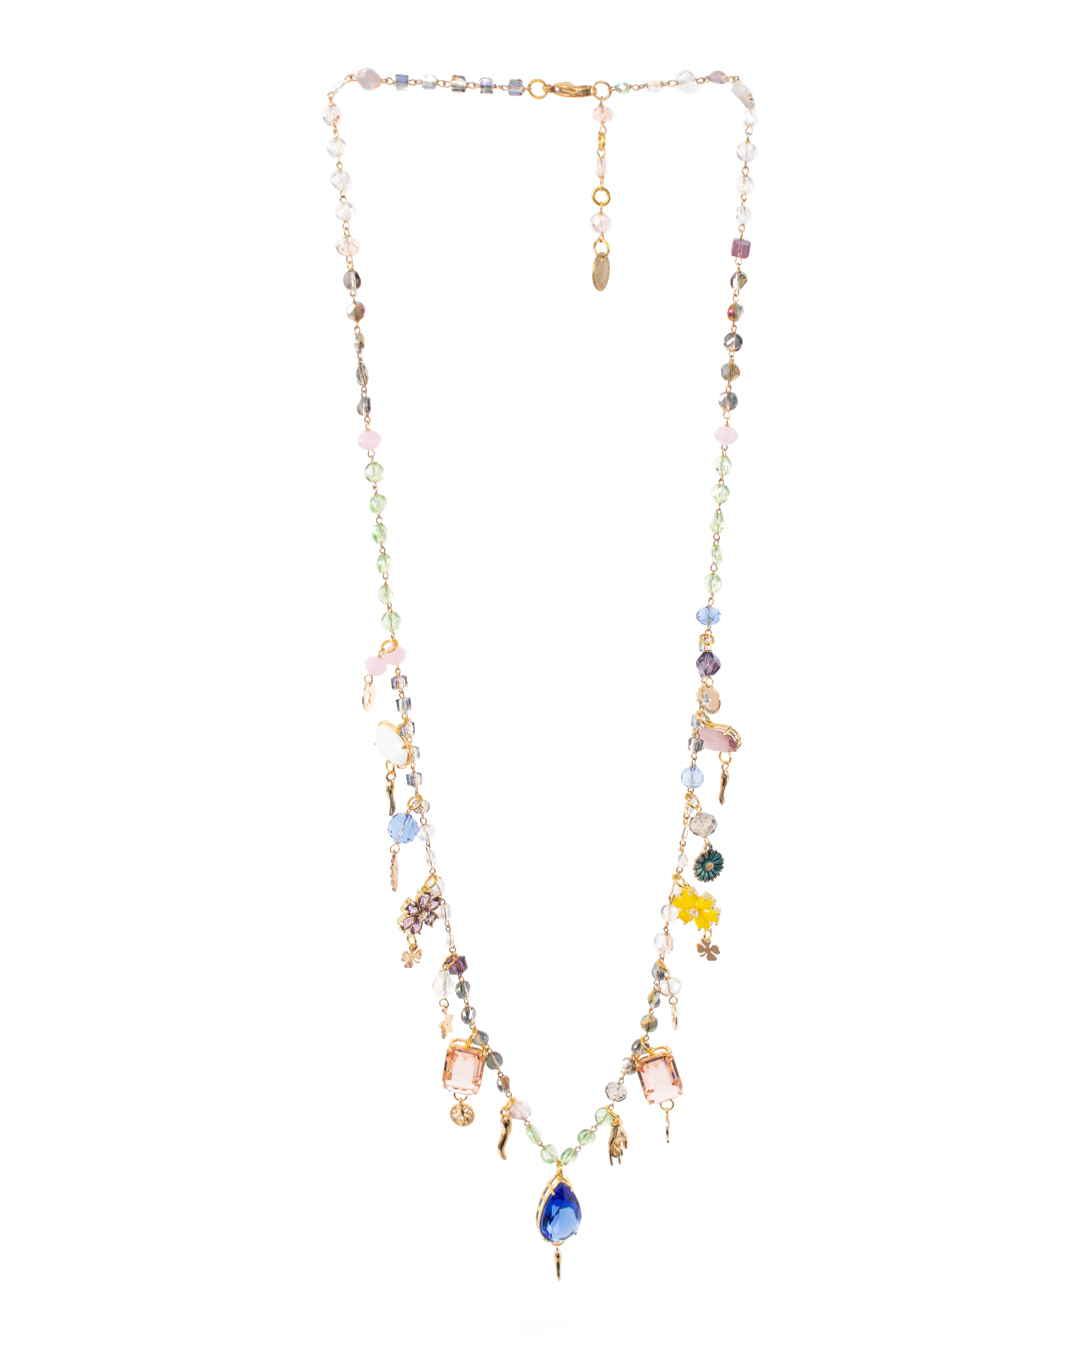 ожерелье Marina Fossati ILLYPILLI LUNGA3 синий+розовый+золотой UNI, размер UNI, цвет синий+розовый+золотой